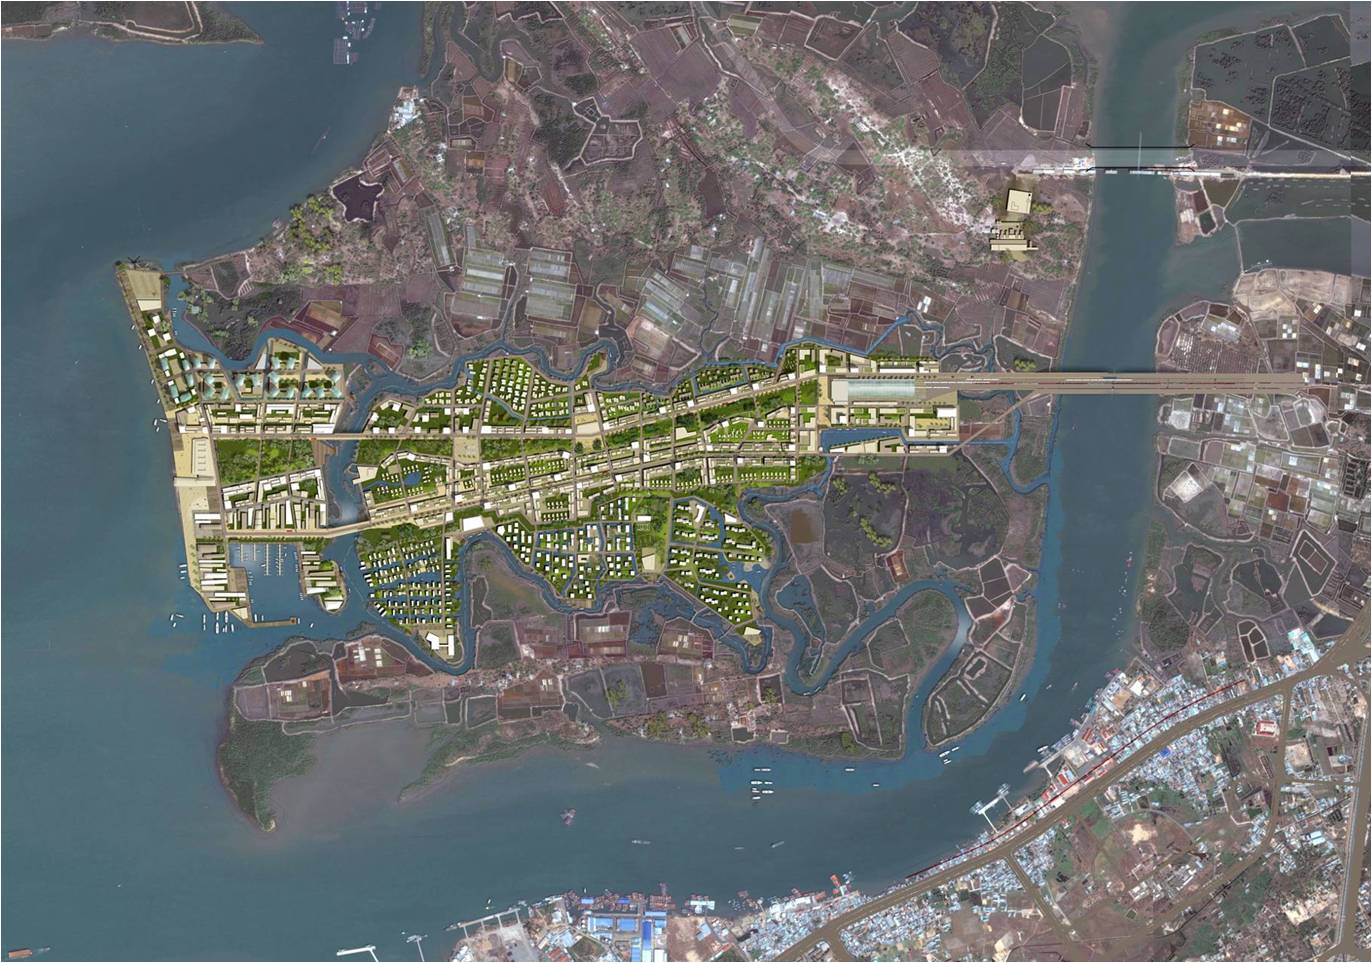 Bà Rịa – Vũng Tàu: Sắp điều chỉnh quy hoạch Đảo Gò Găng, dân số có thể tăng gần 3 lần